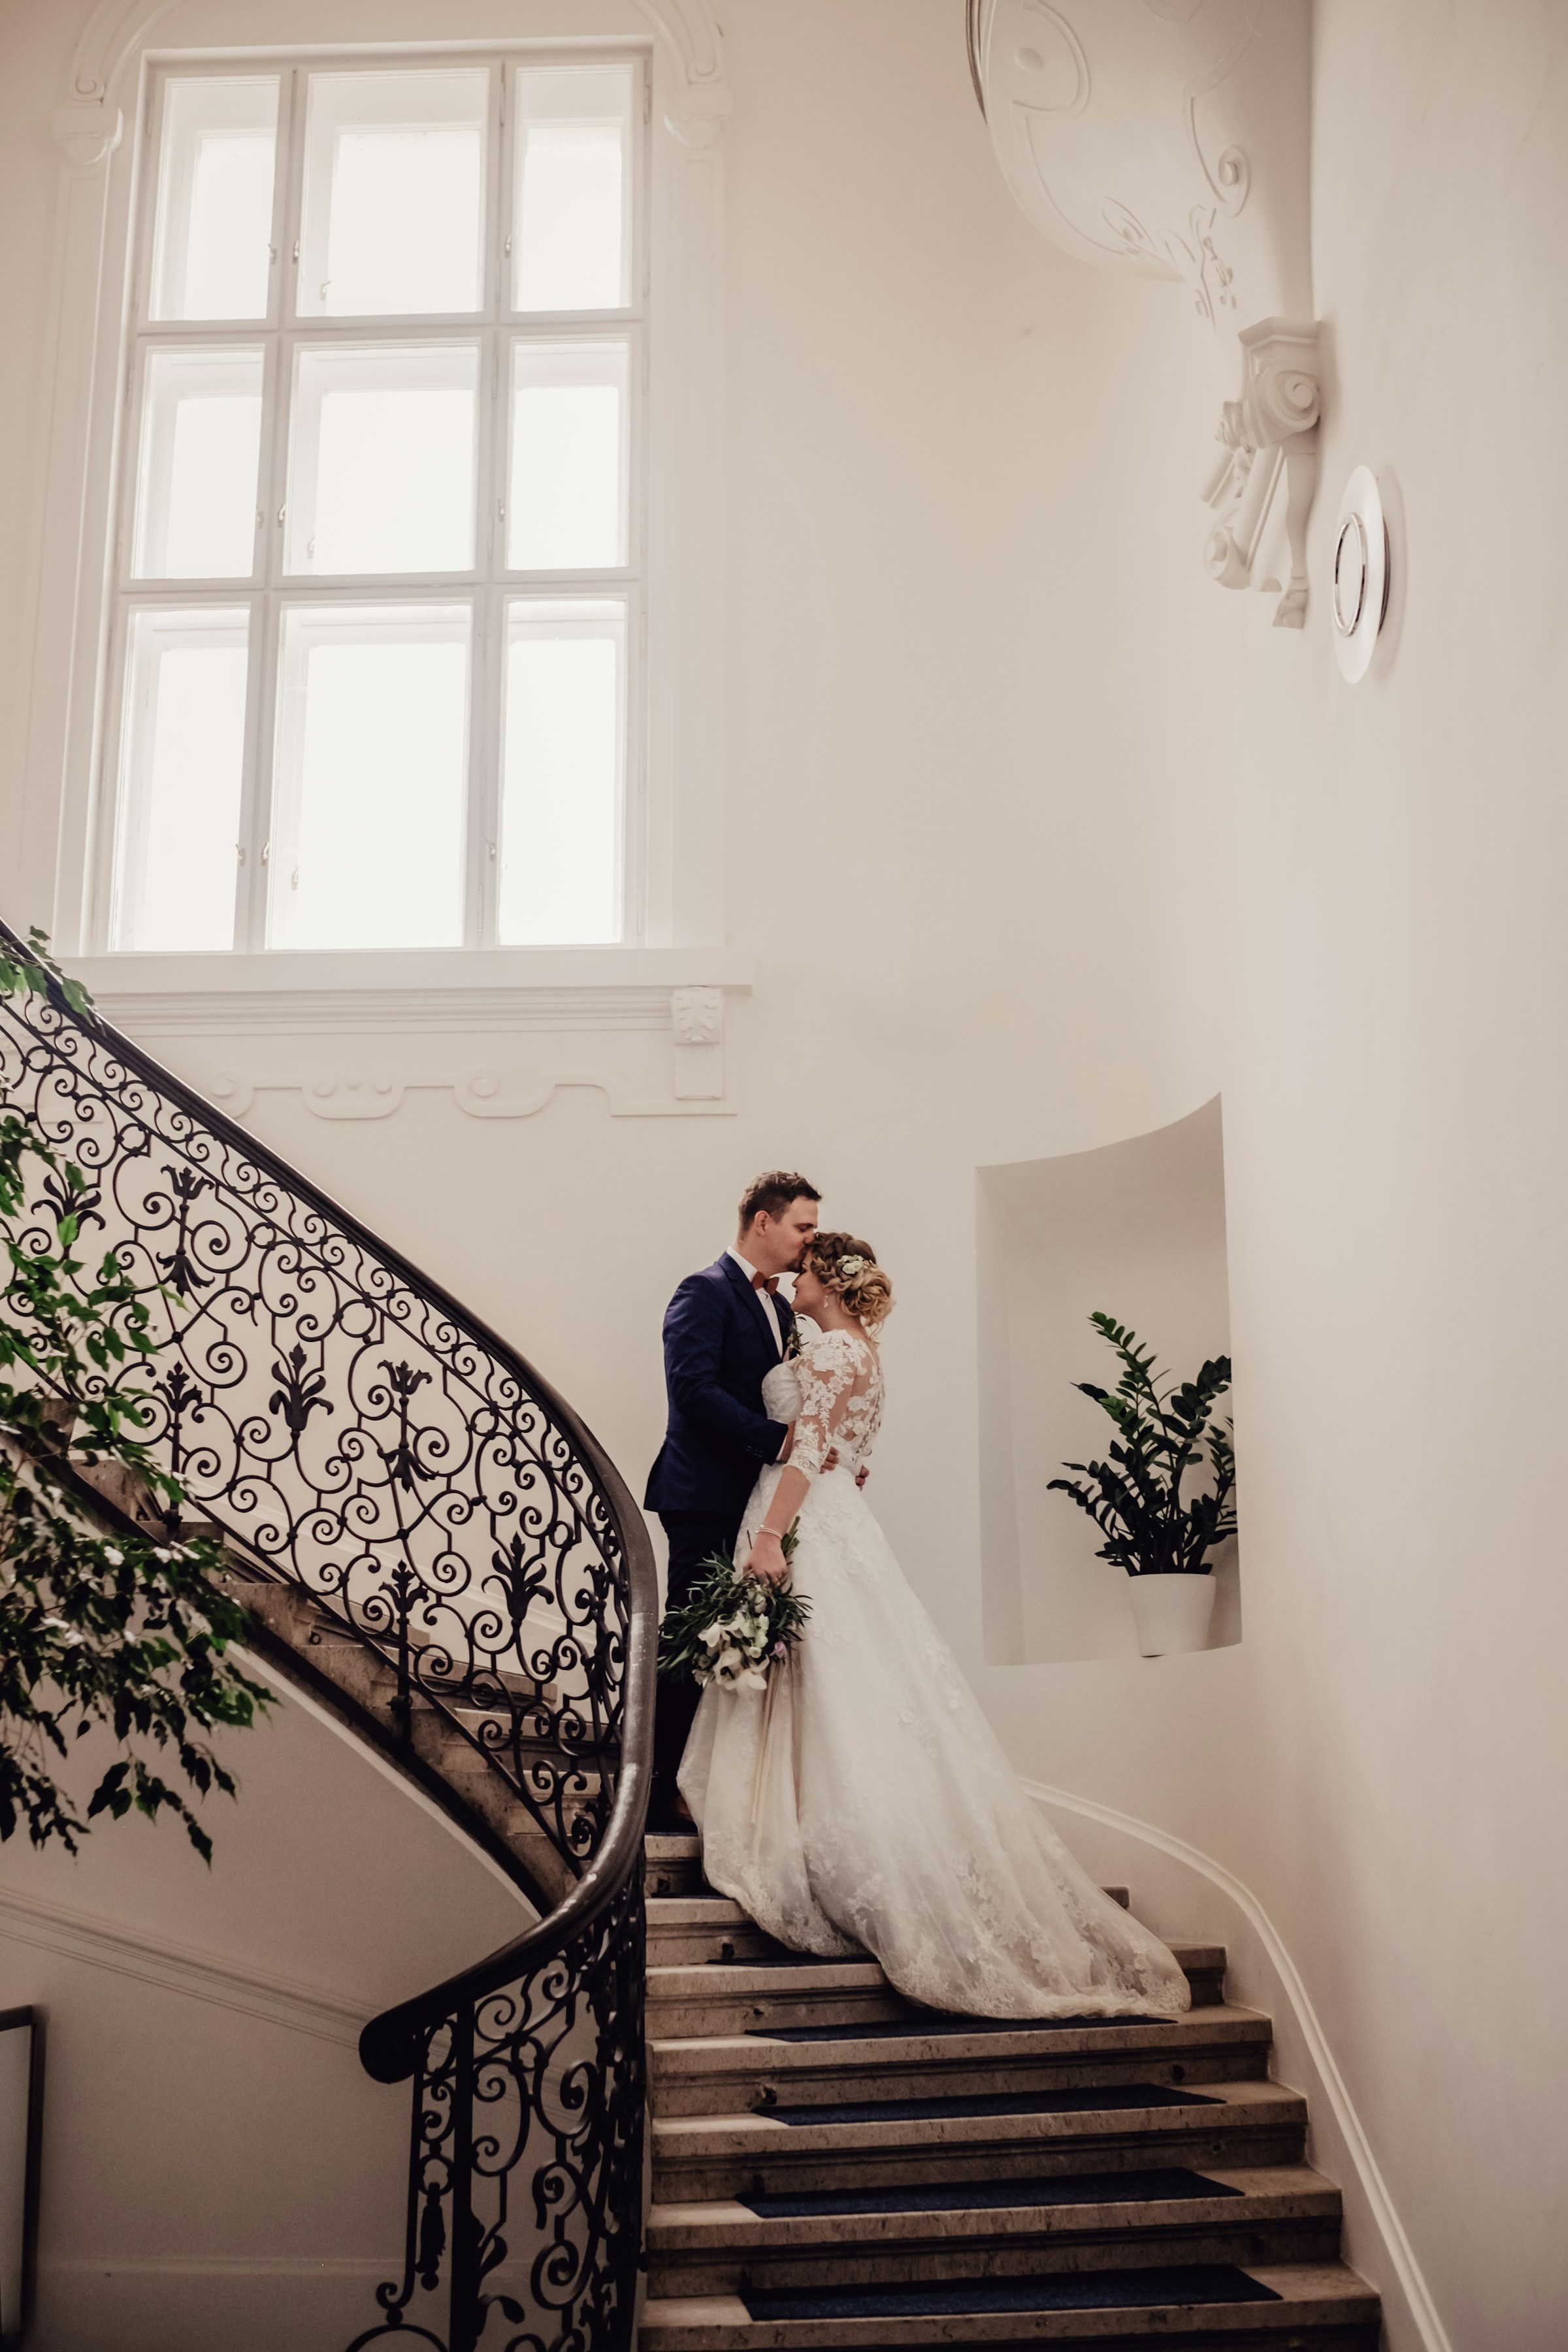 Ein Brautpaar auf einer Treppe | Quelle: Unsplash